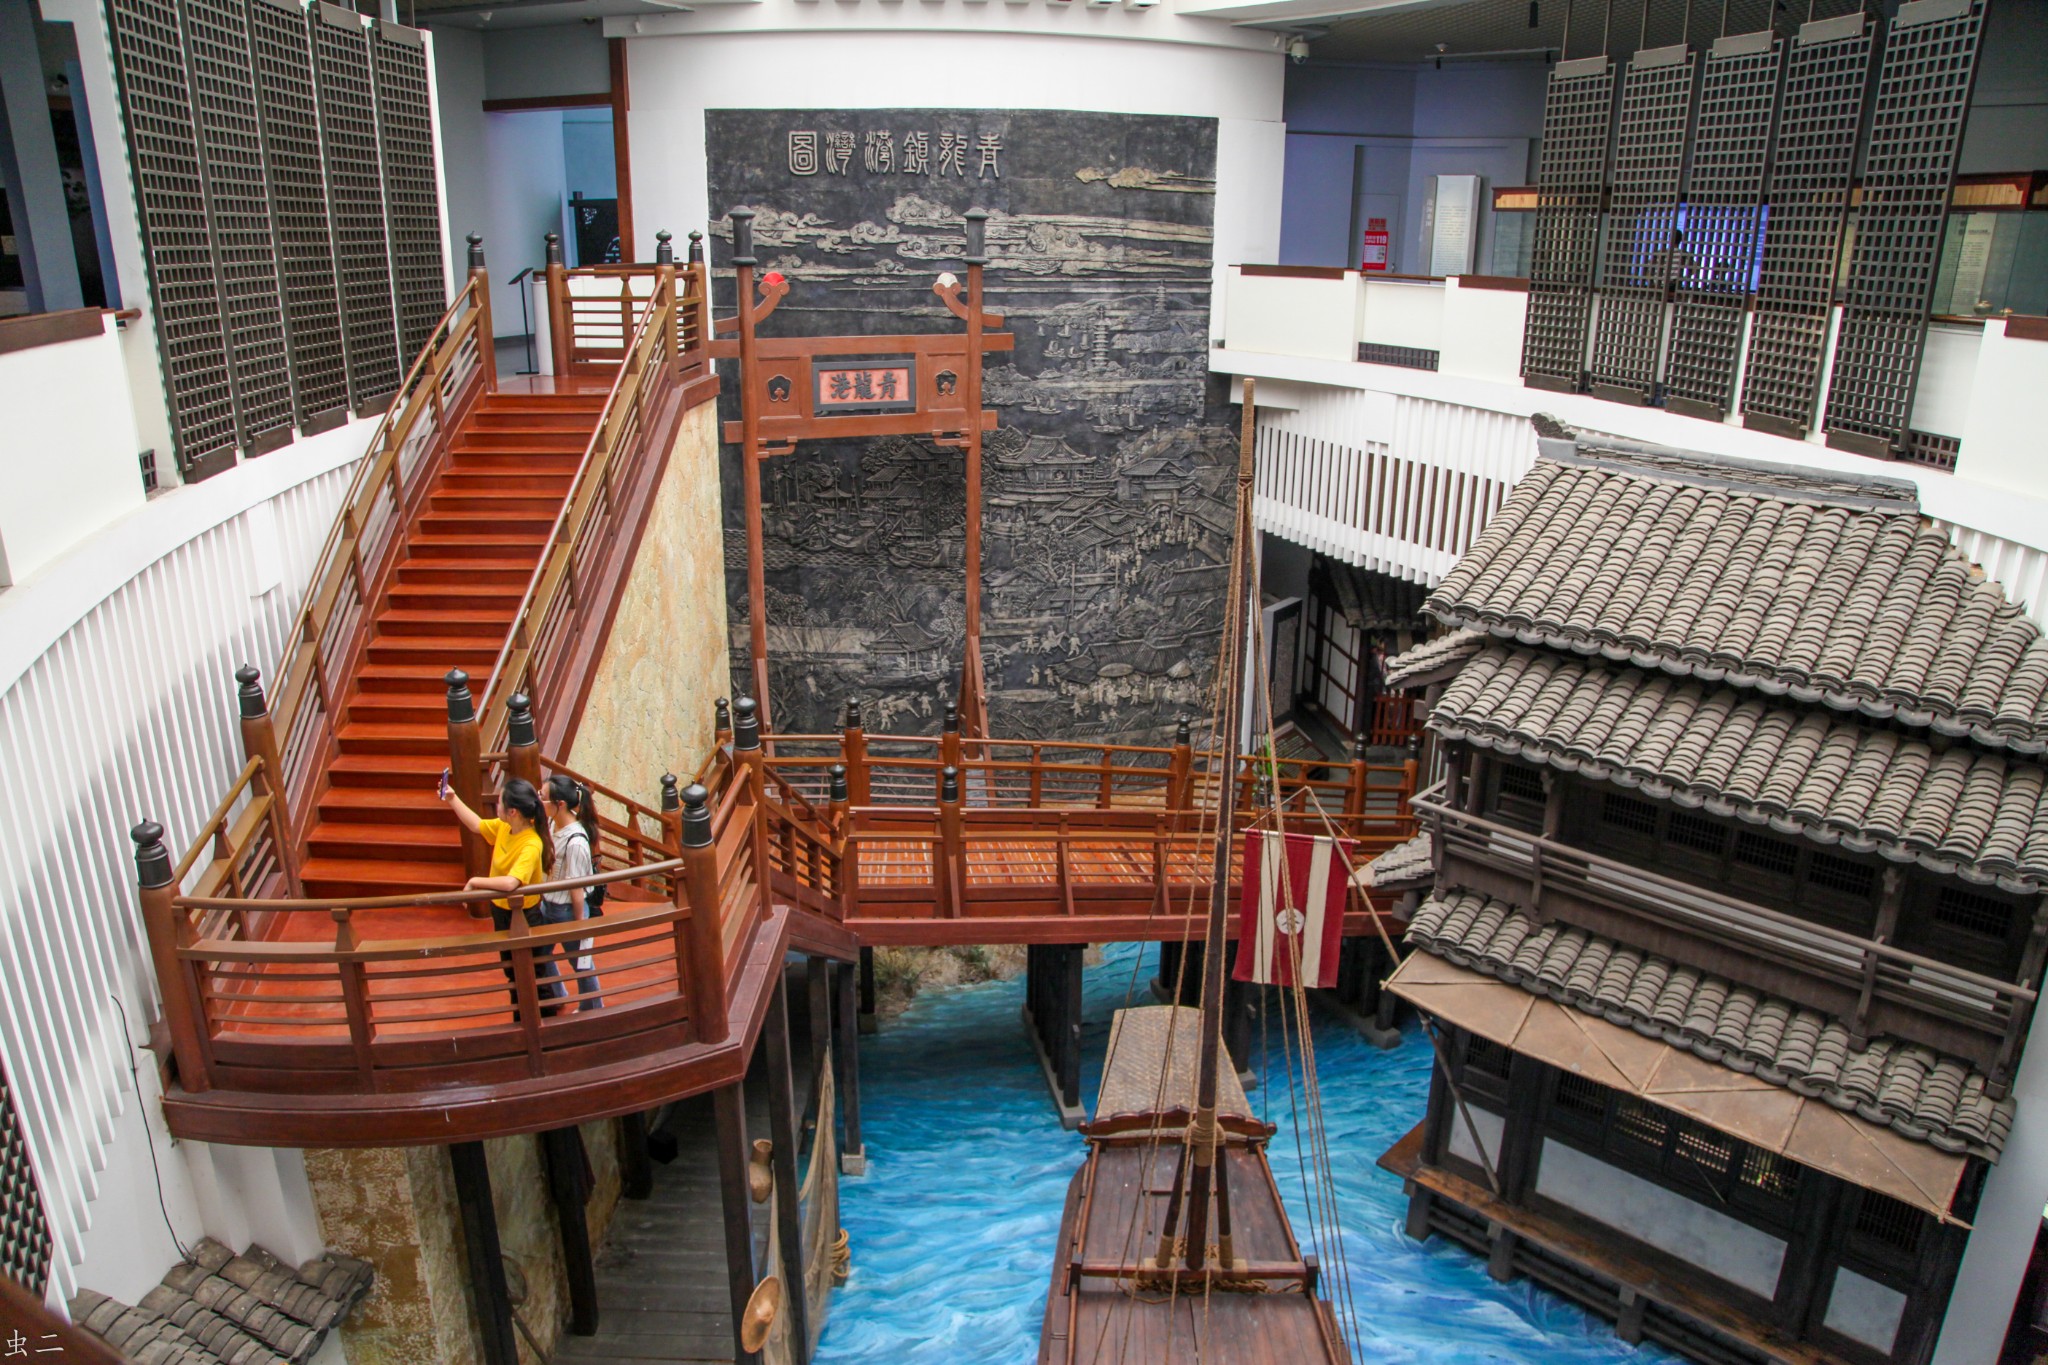 上海青浦博物馆2申城水文化之魅惊奇博物馆